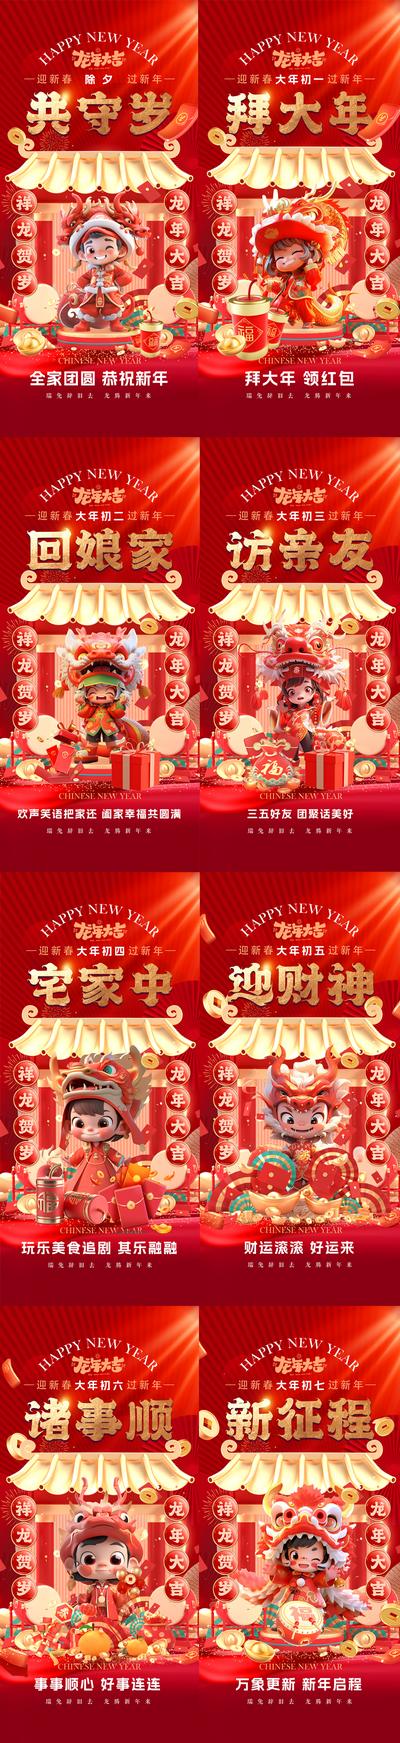 南门网 海报 地产 中国传统节日 龙年 春节 过年 新年 除夕 年俗  国潮 手绘 